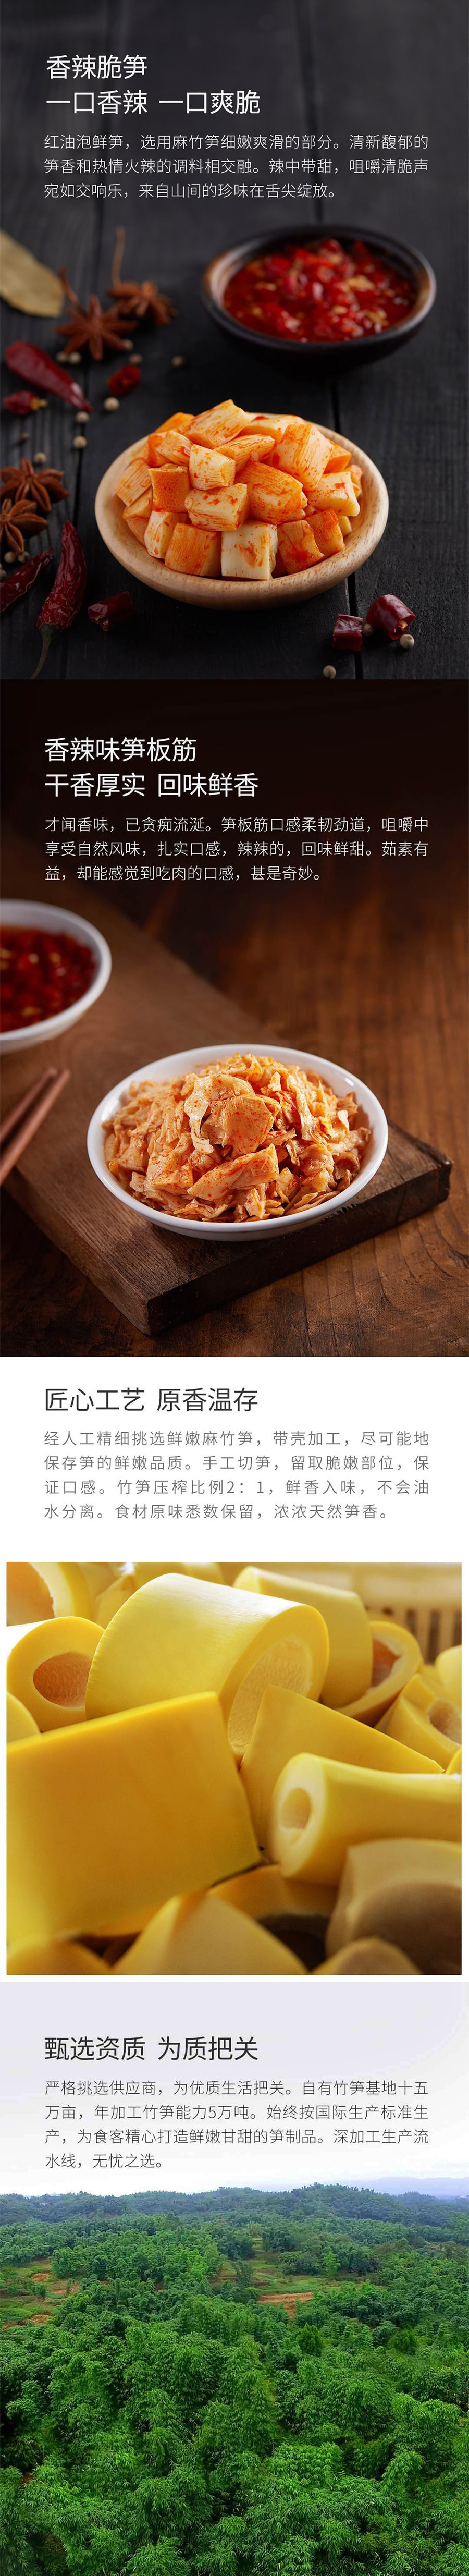 【中国直邮】小米有品社谷制菓笋板筋香辣味 180g/袋